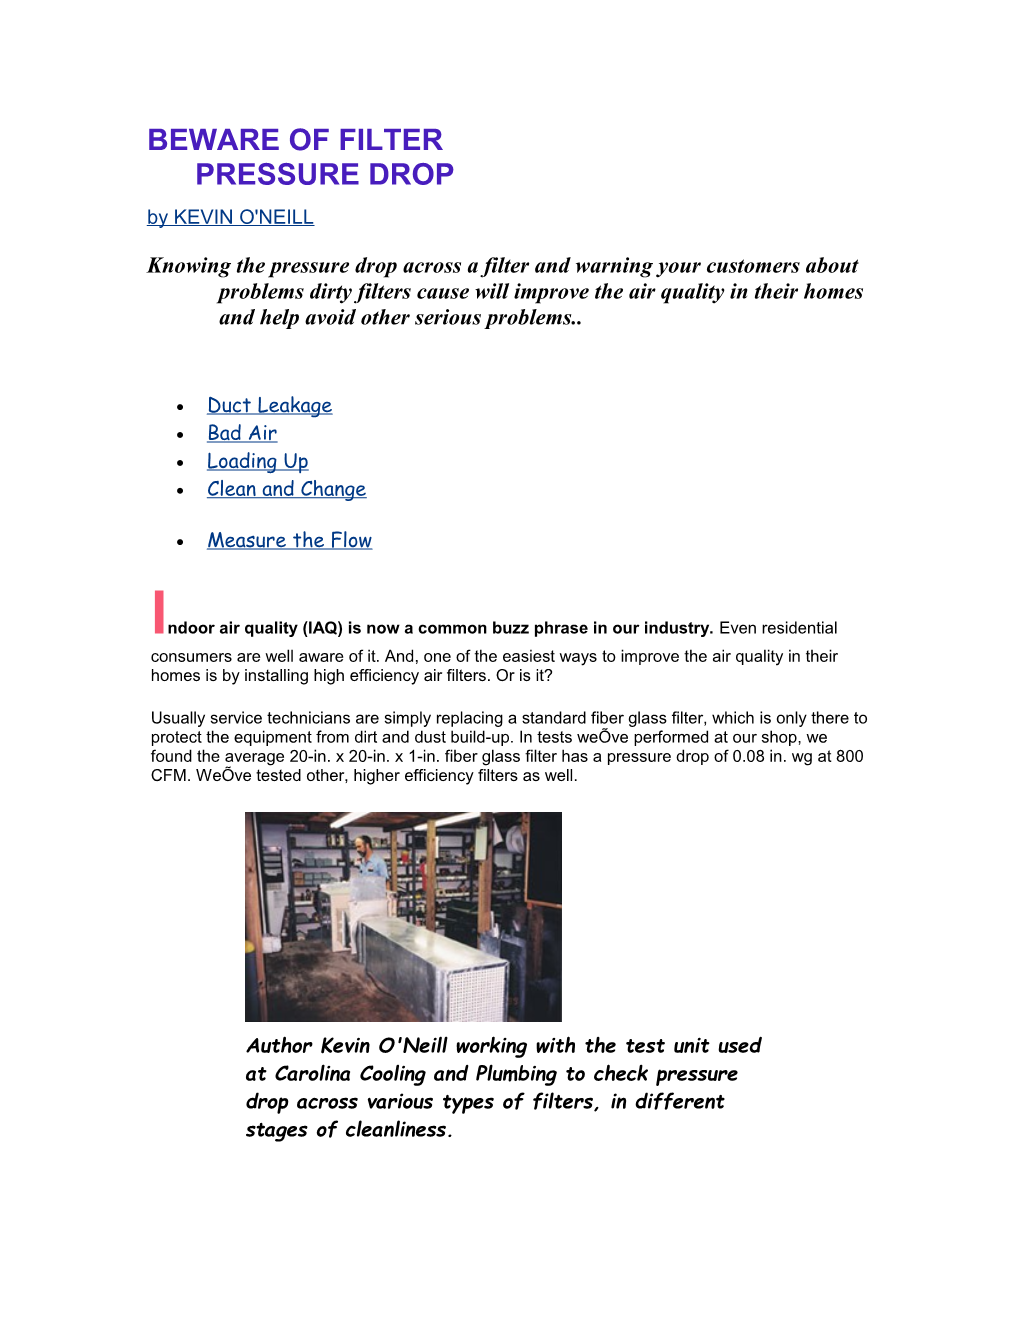 Beware of Filter Pressure Drop